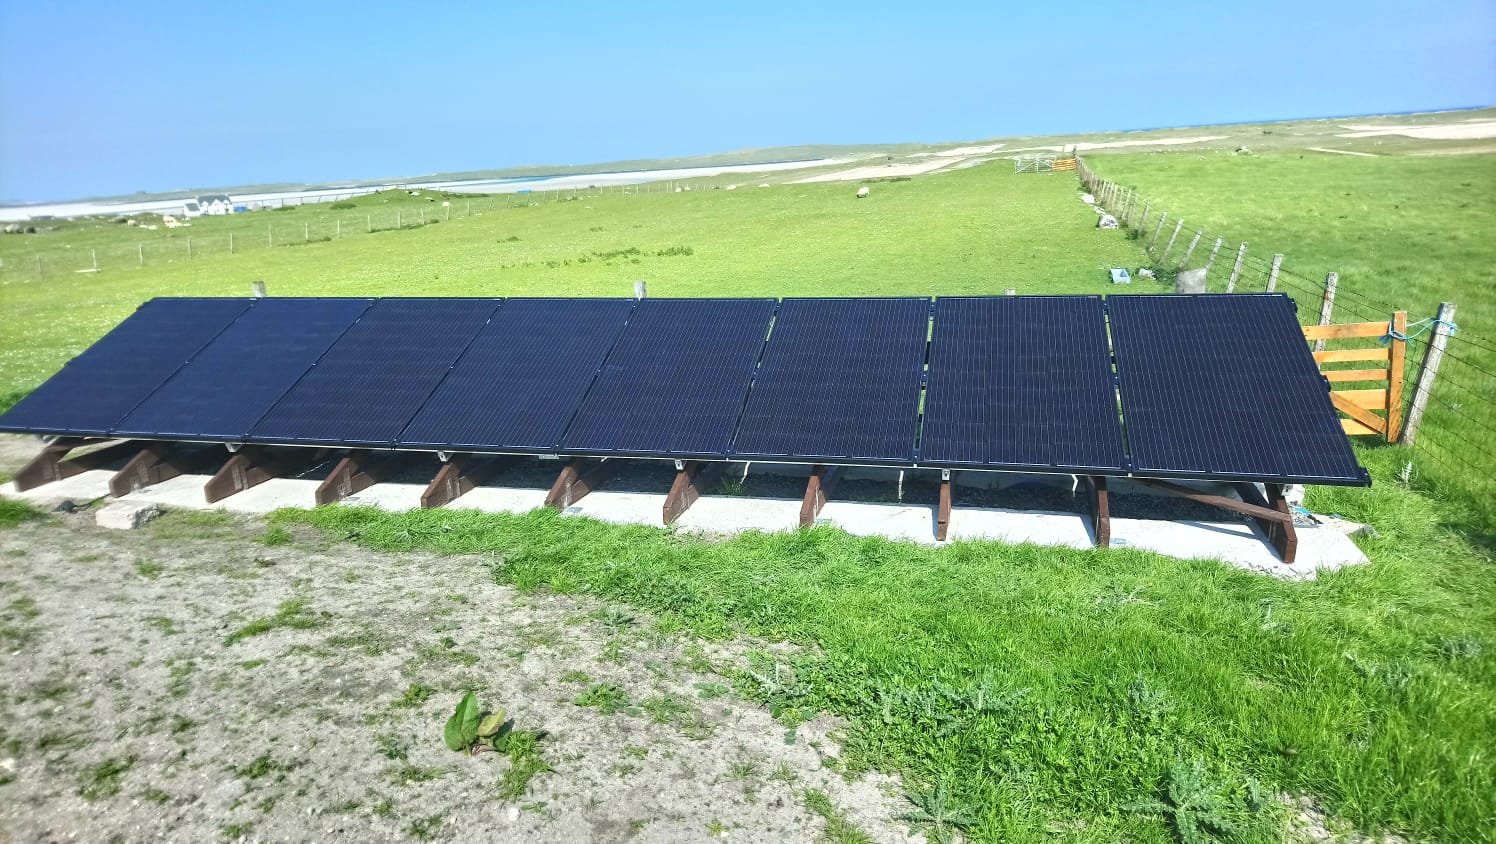 PV Solar Panels in Field